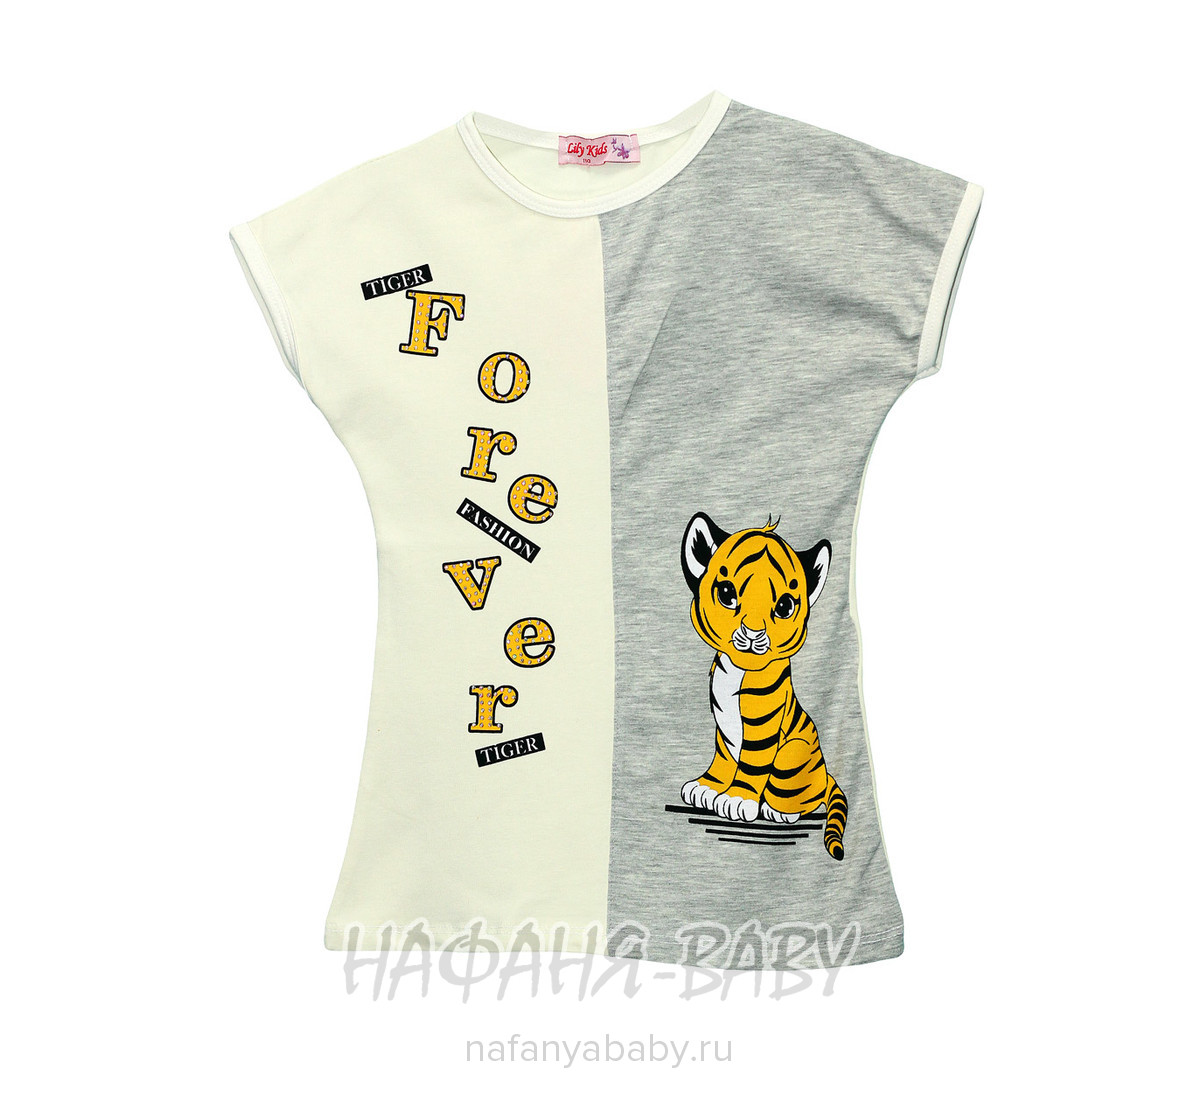 Детская футболка с принтом LILY Kids арт: 3611, 5-9 лет, цвет кремовый, оптом Турция